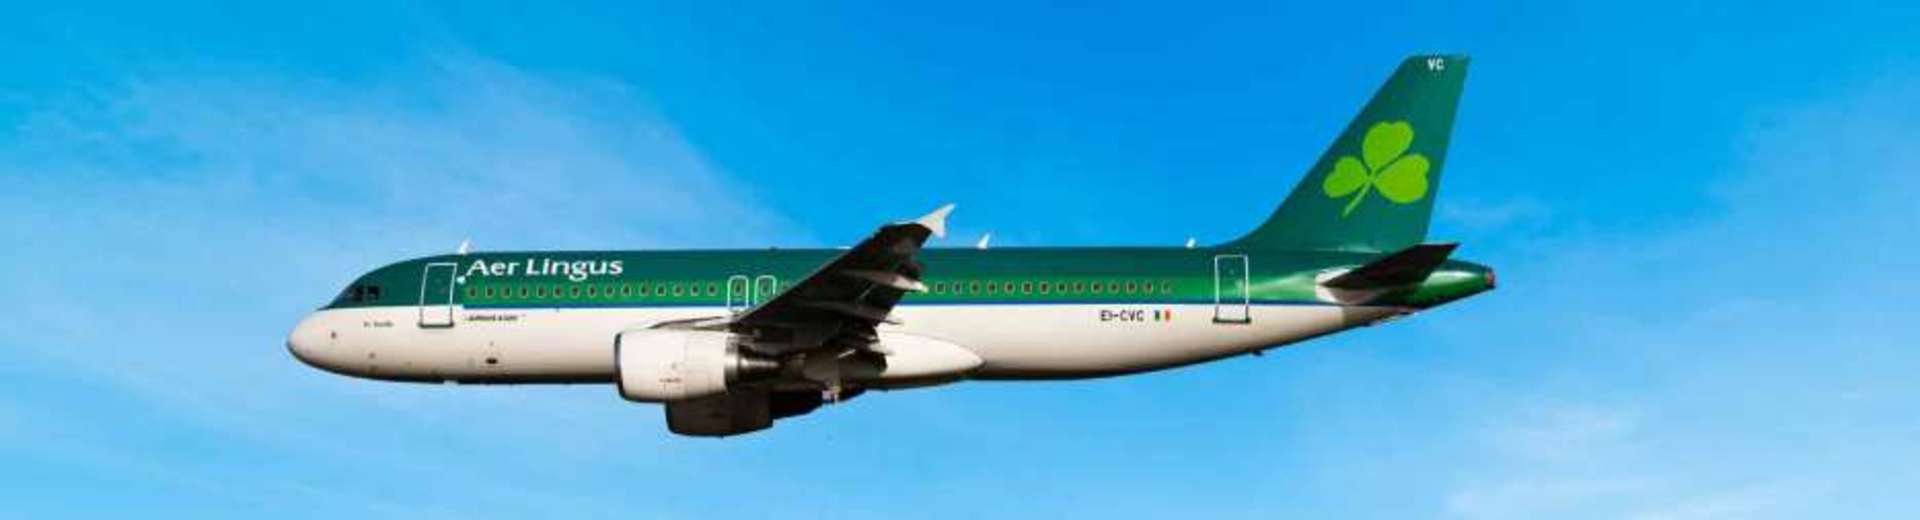 Airline Aer Lingus-hero